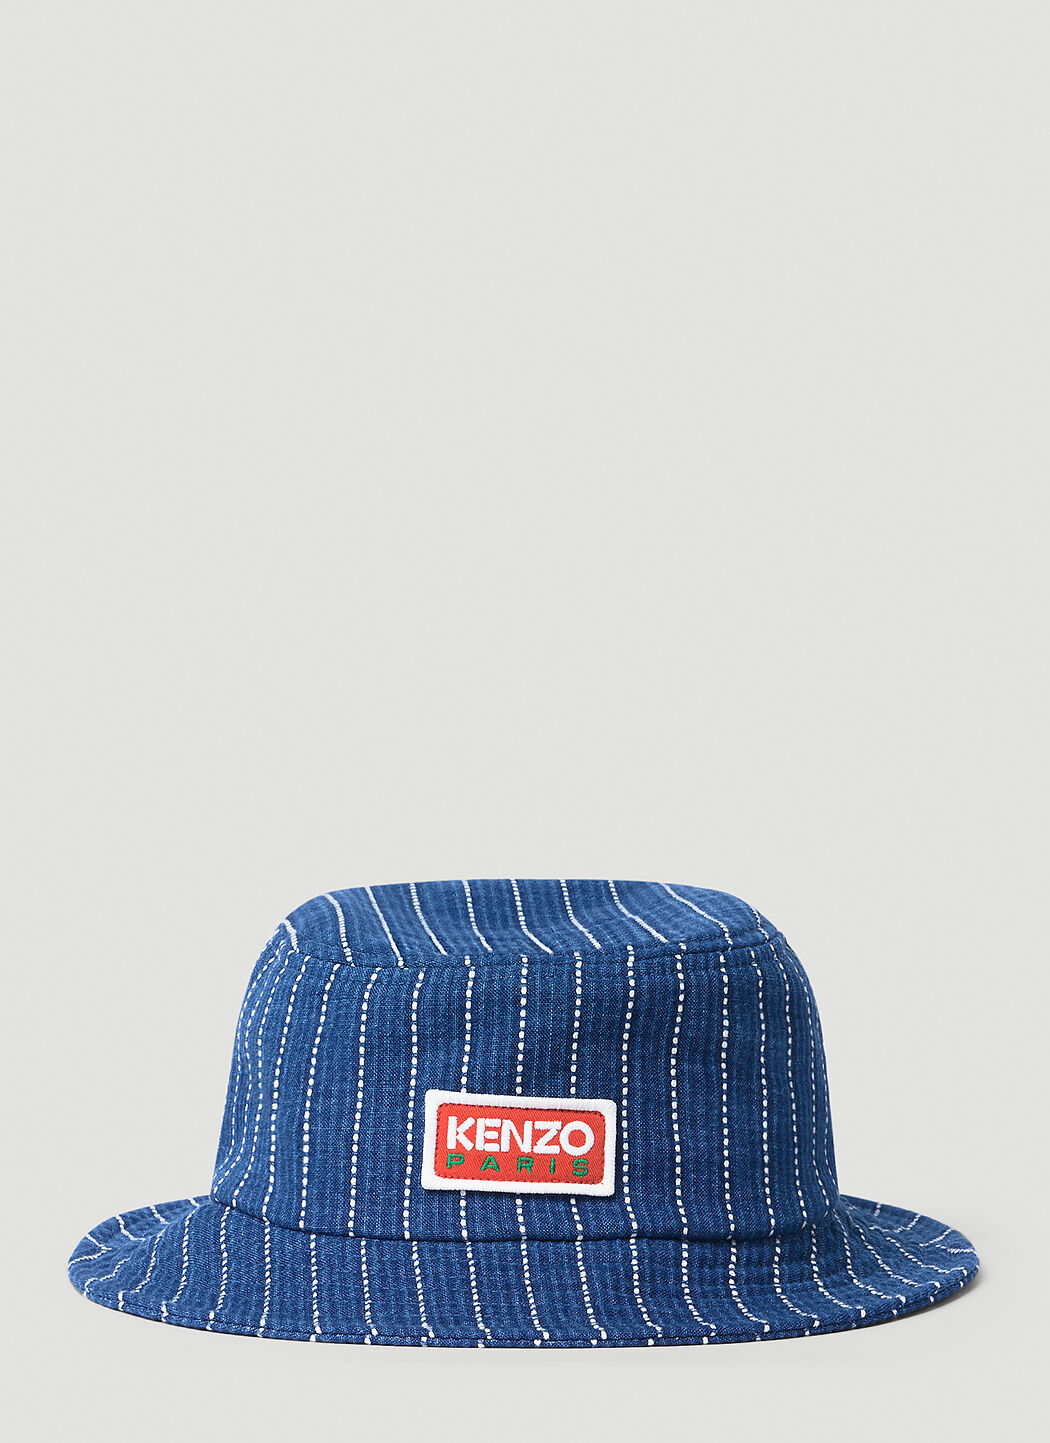 Kenzo x Levi's 徽标印花牛仔条纹渔夫帽 红色 klv0156003